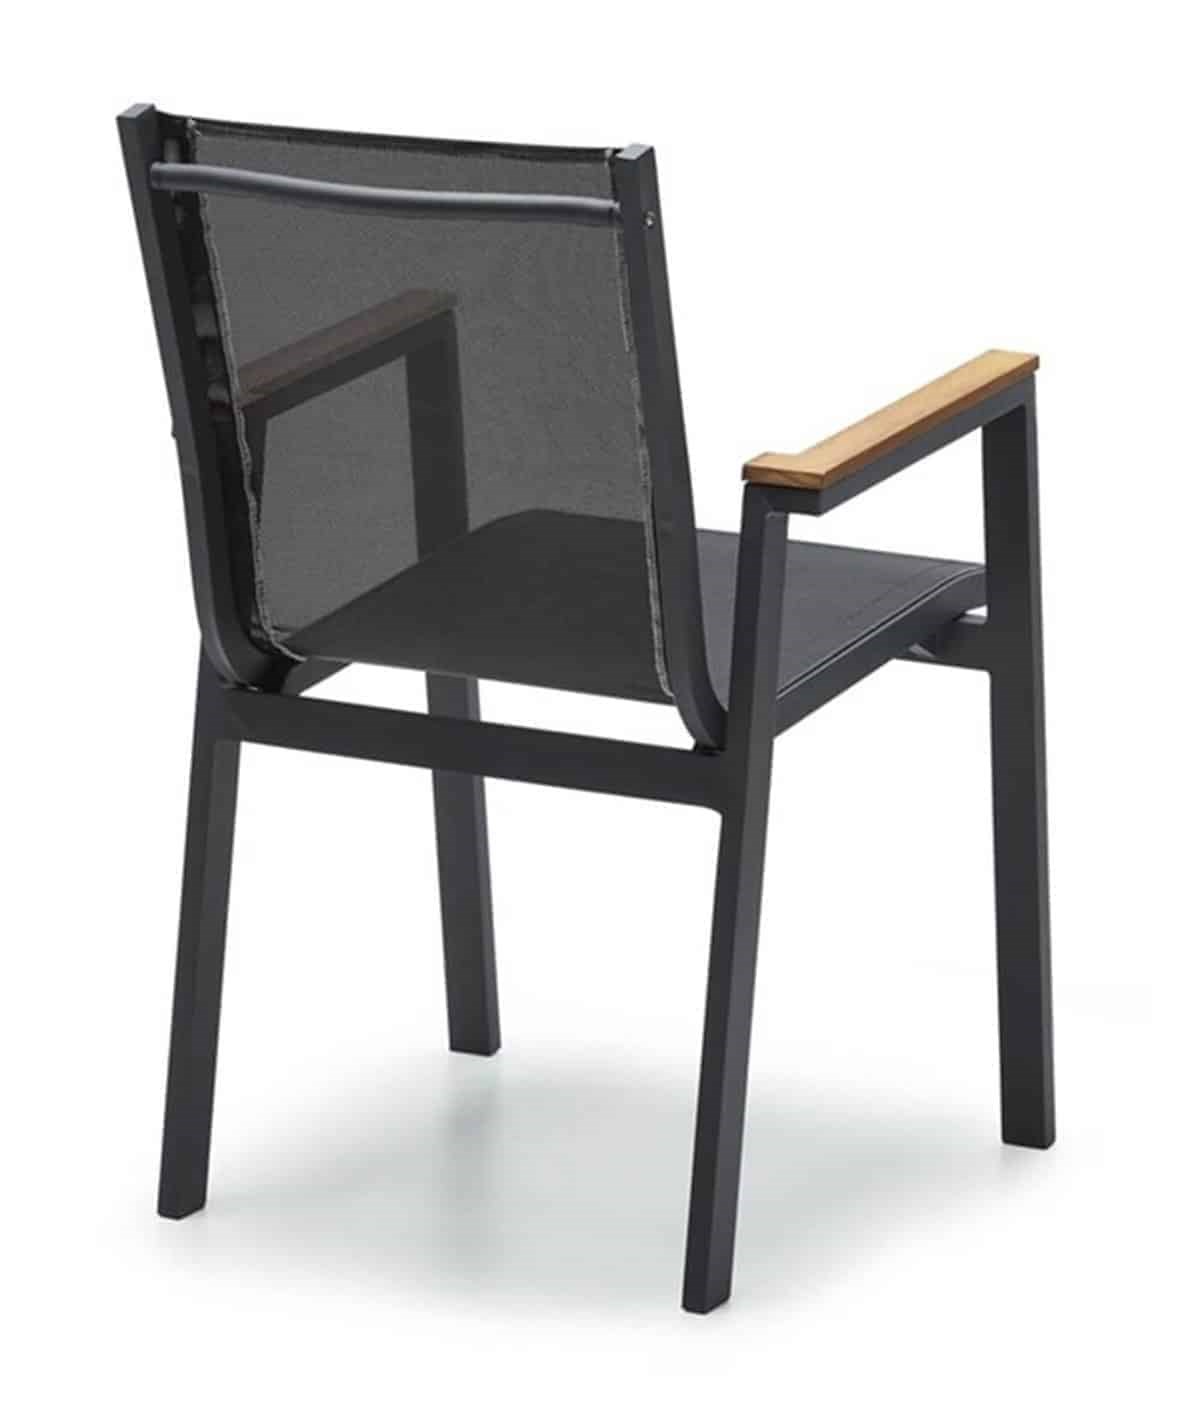 Ottowa Bahçe Sandalye - Bahçe Sandalyesi Modelleri & Fiyatları